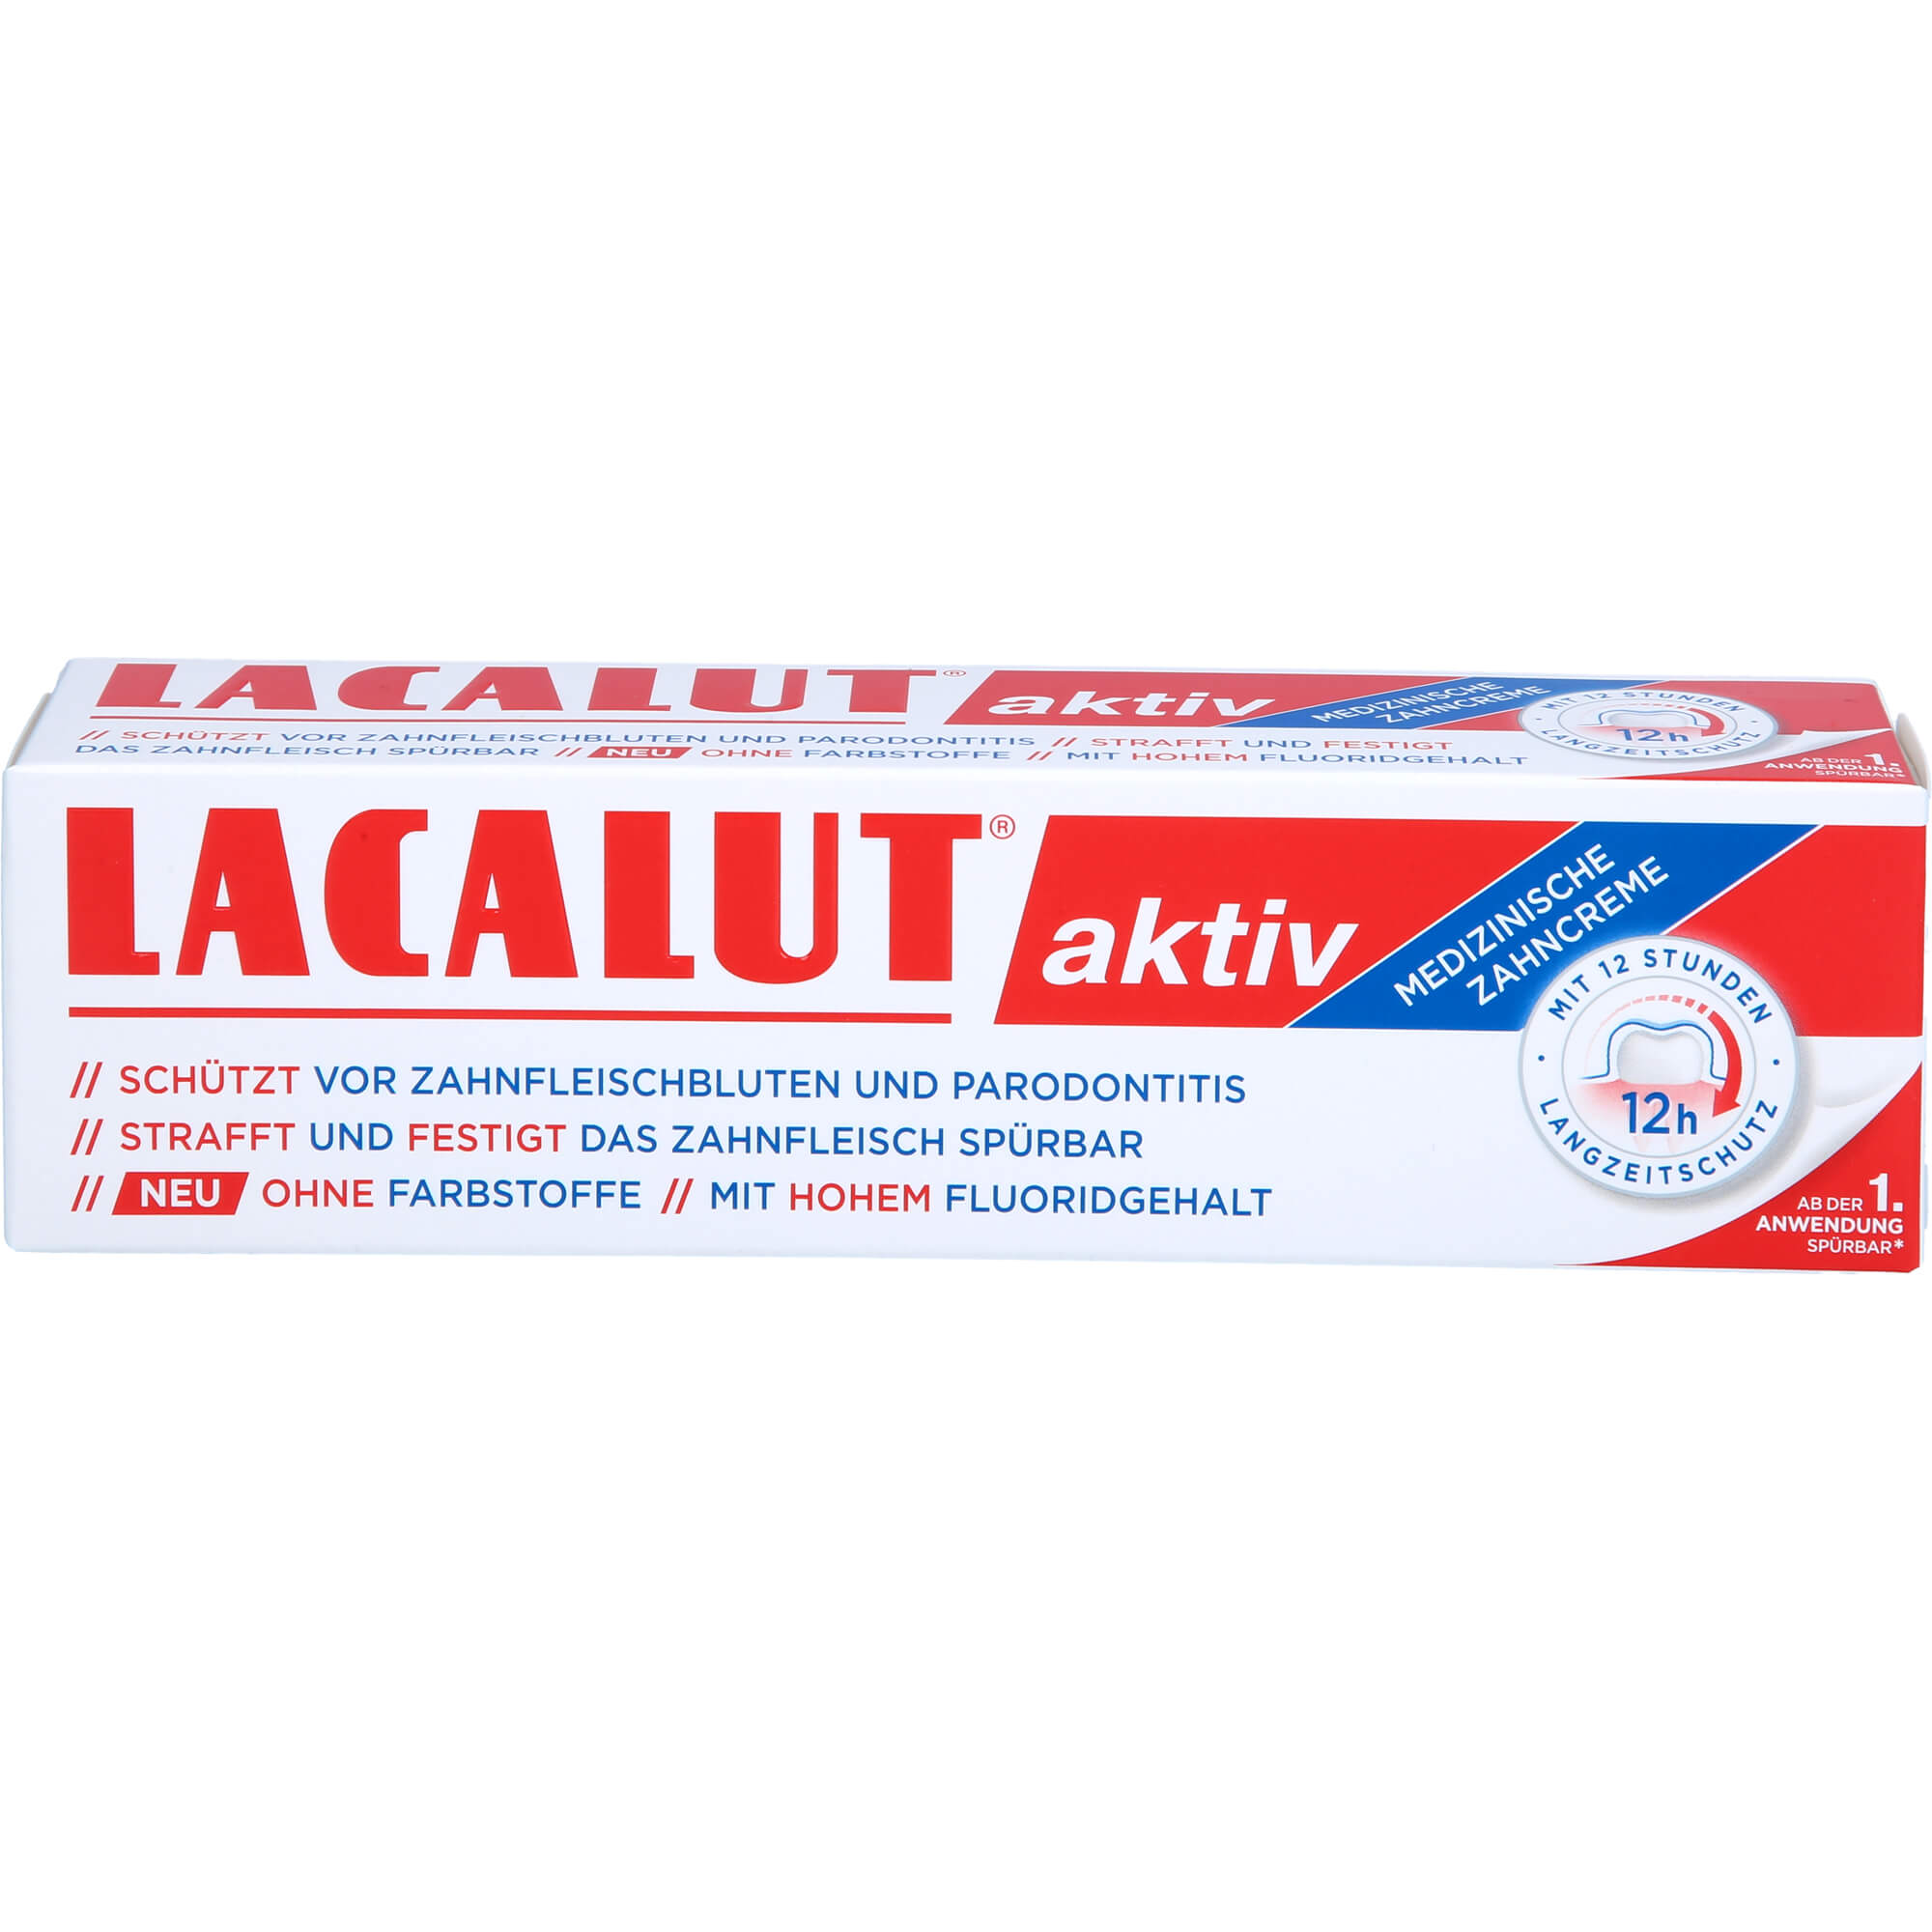 LACALUT-aktiv-Zahncreme